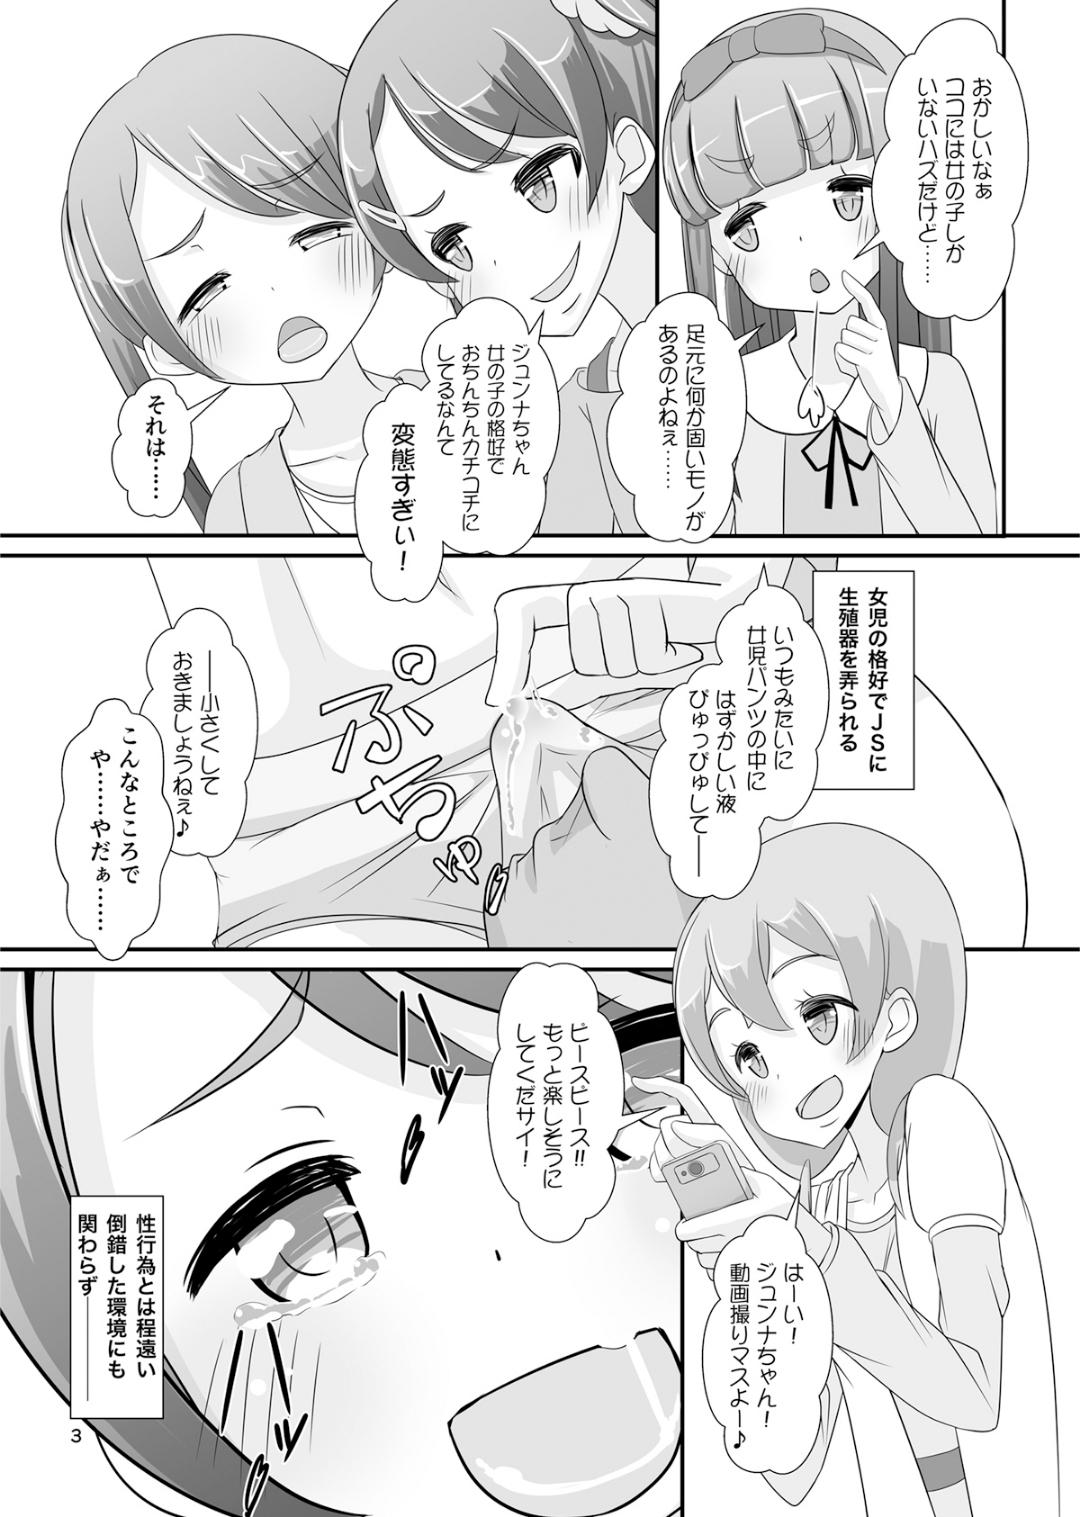 Cornudo Sensei! Girls fes de Jojisou sitemite!  - Page 4